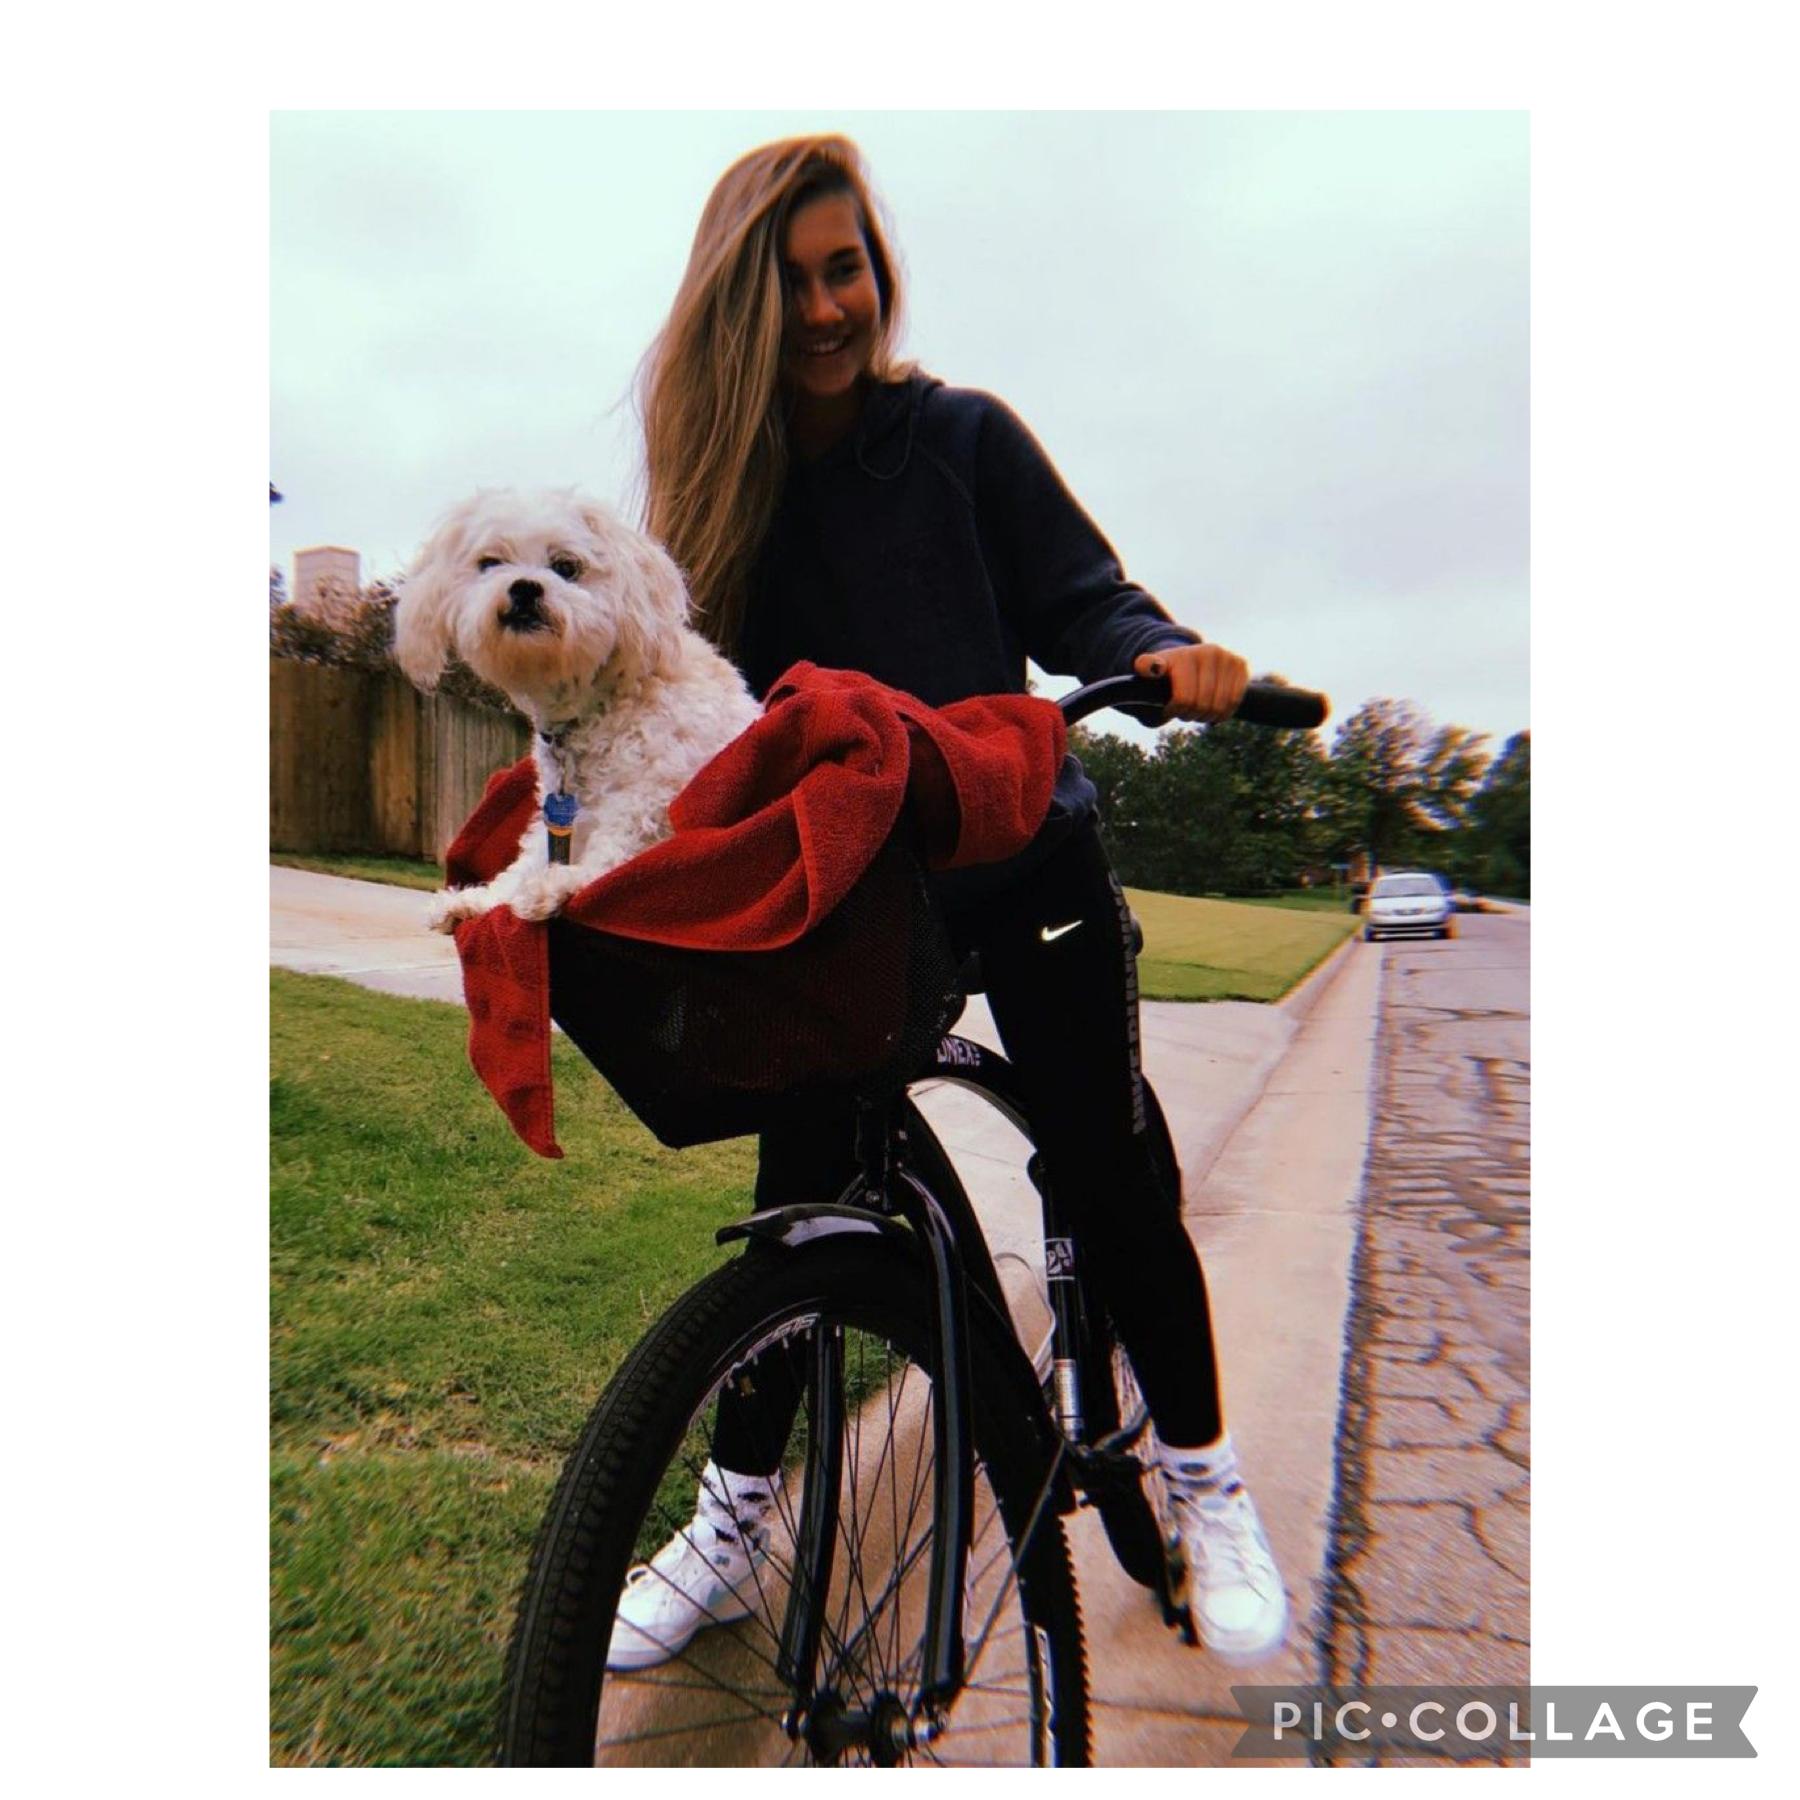 Riding my bike with my dog lol 